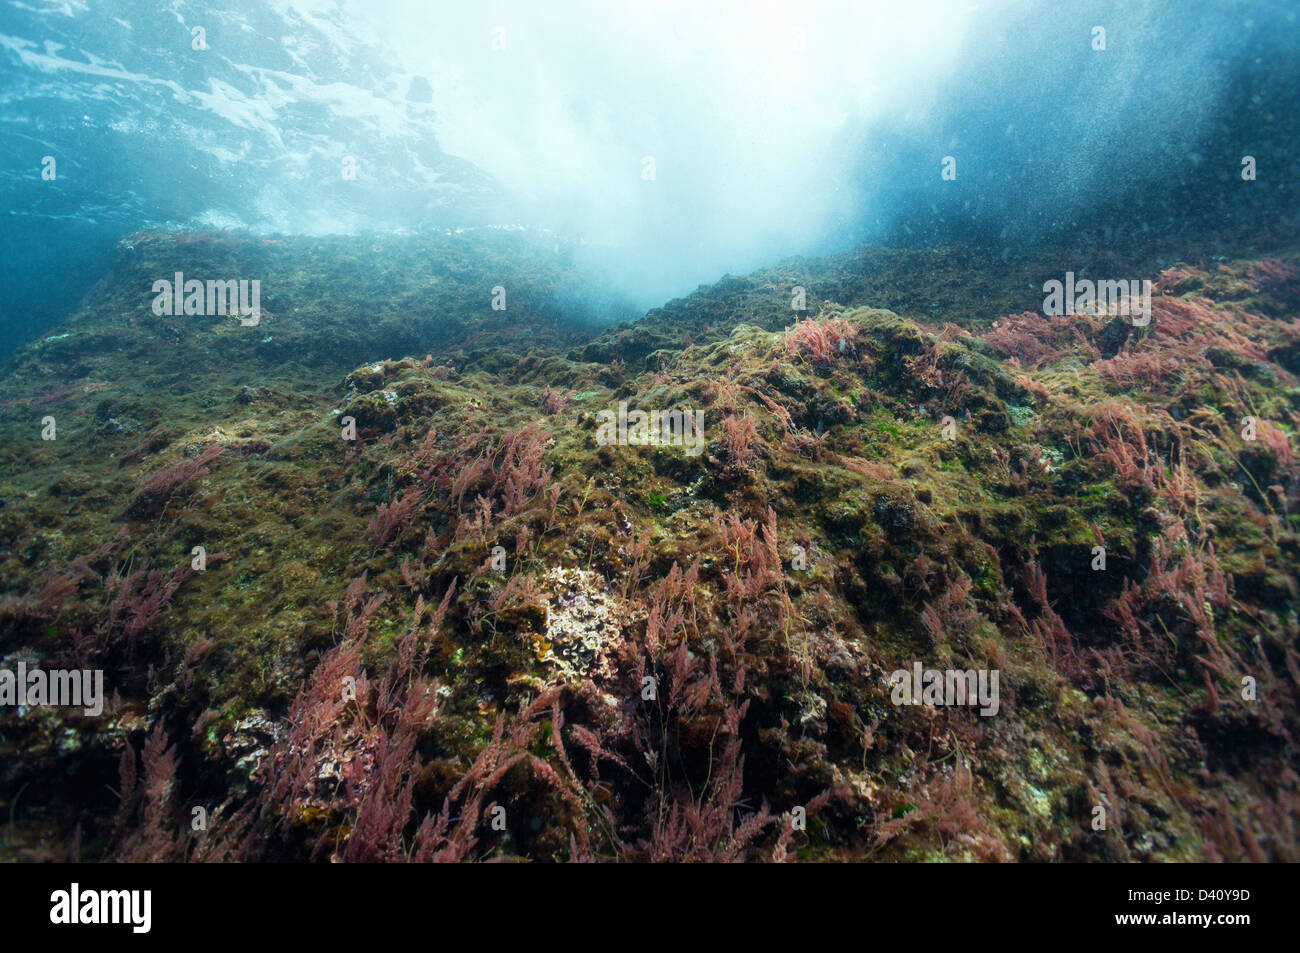 Les algues sur les roches près de la surface de la mer, vue sous-marine, de l'Europe Banque D'Images